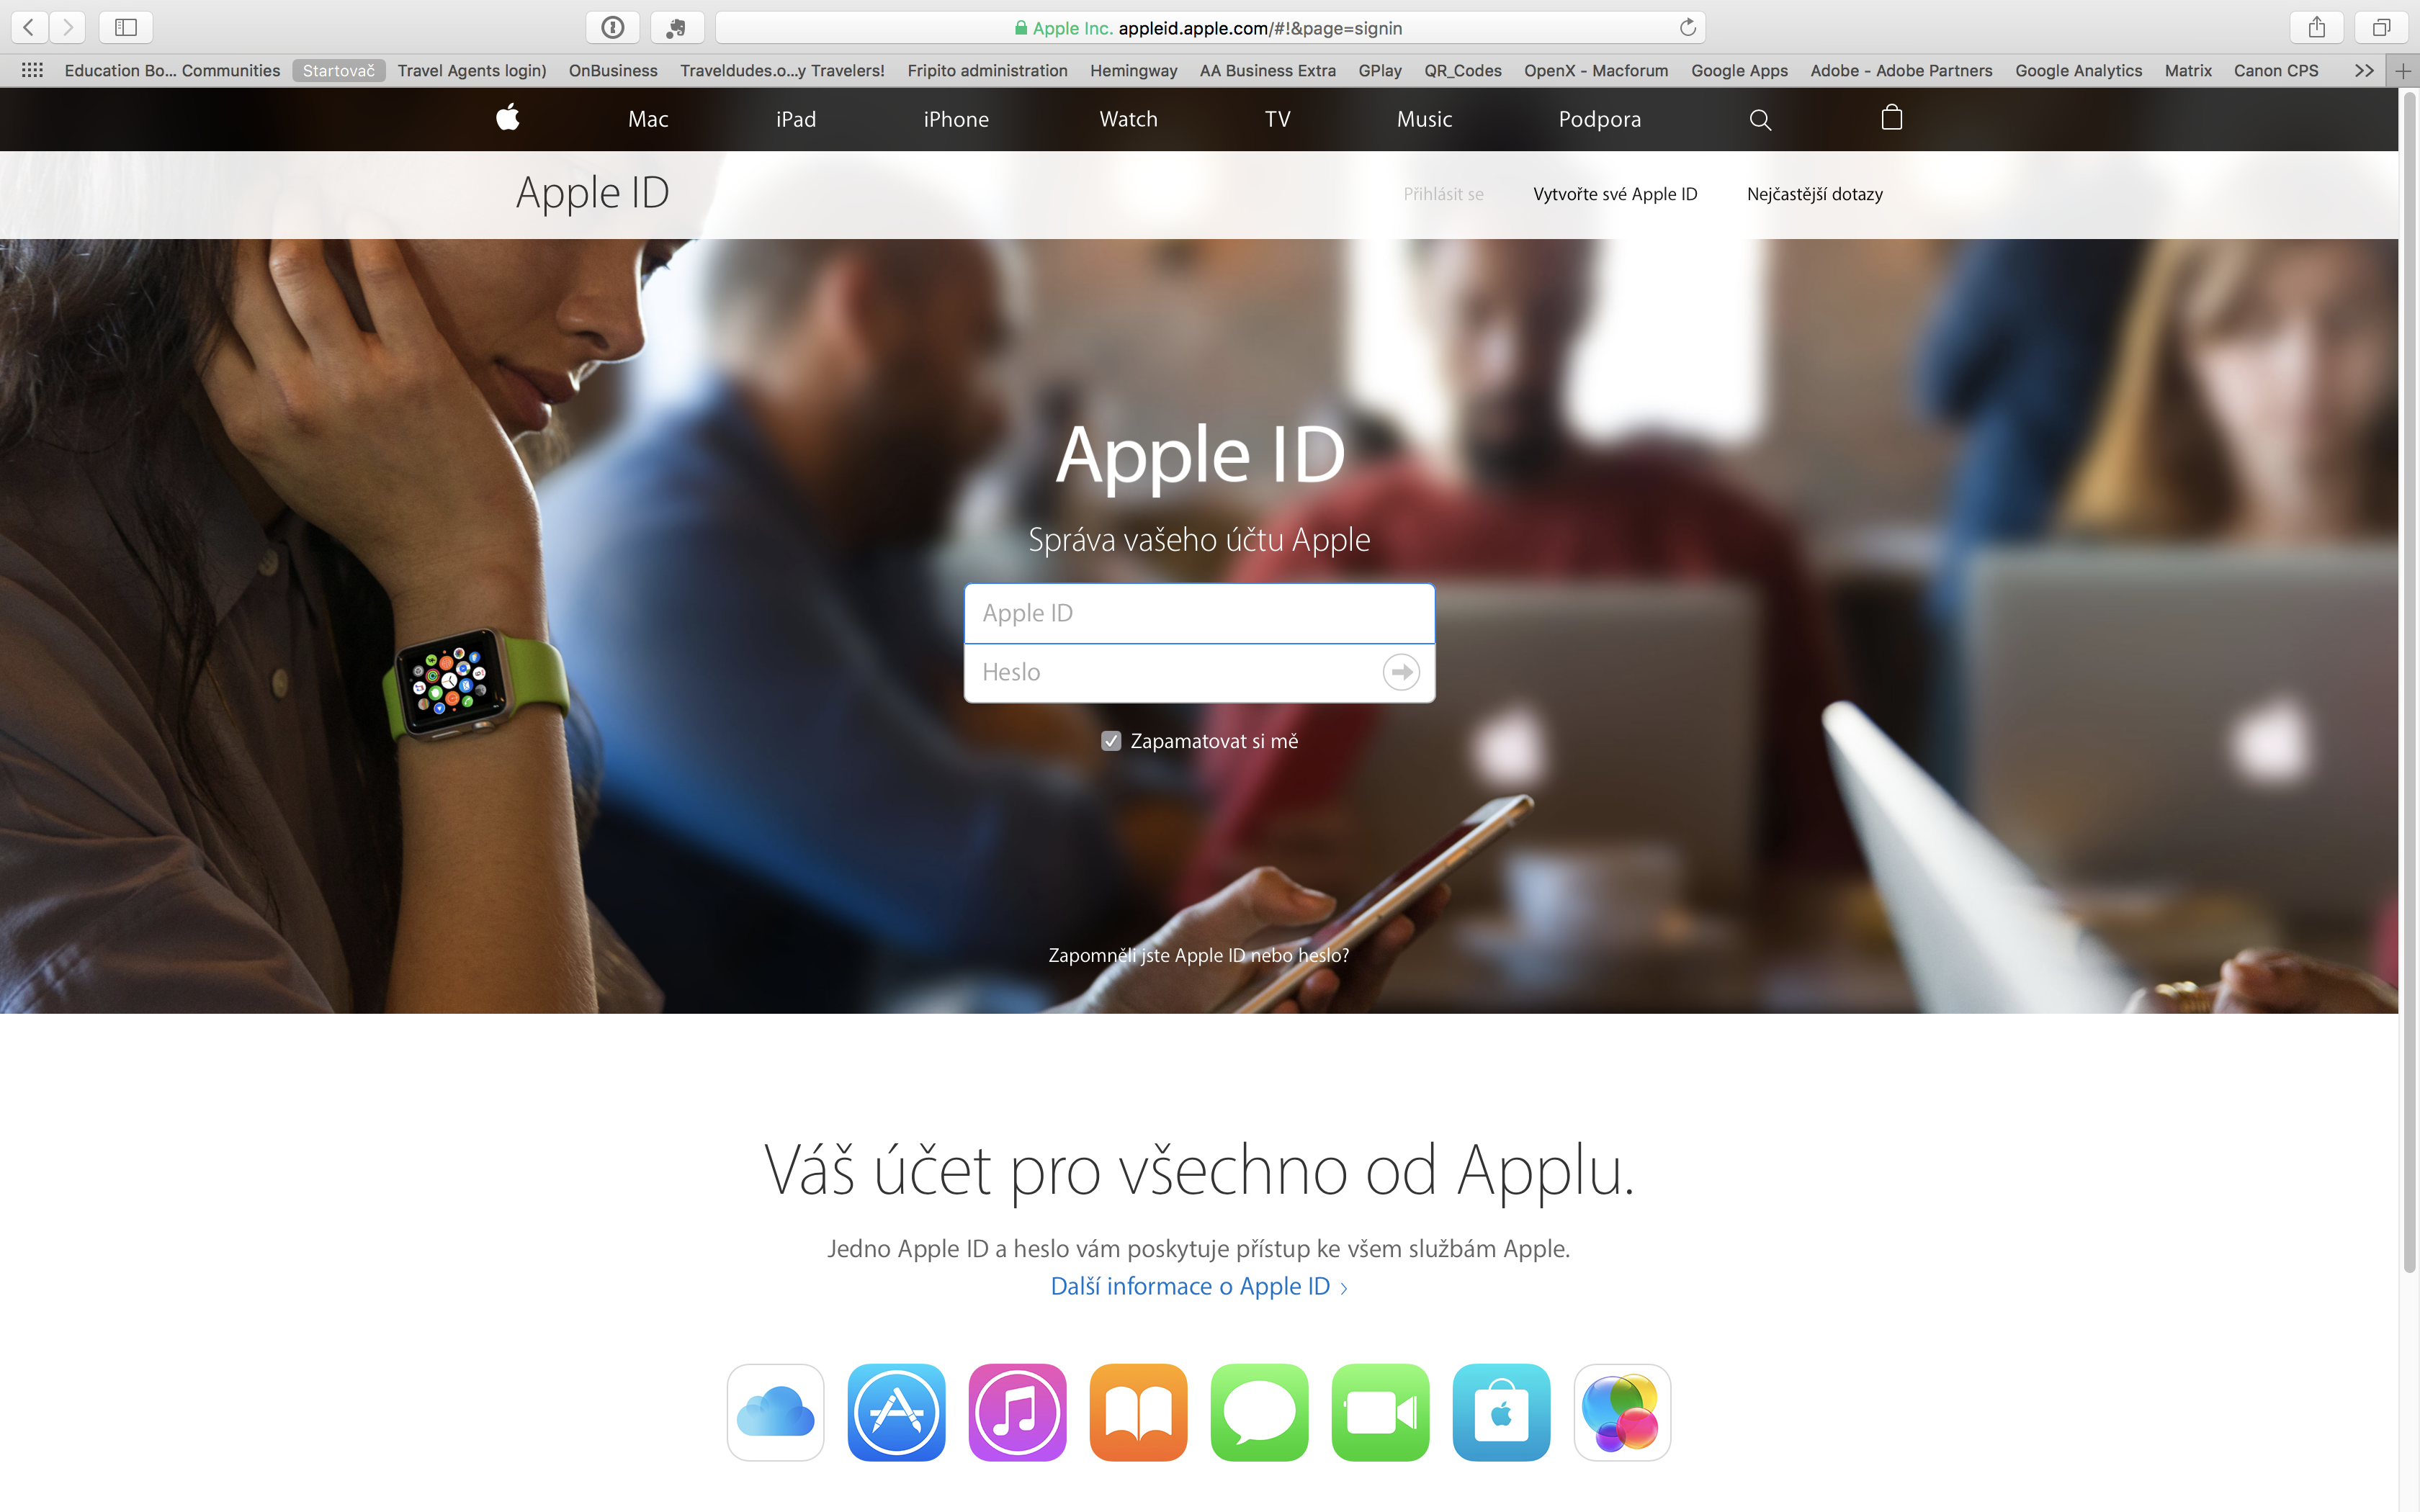 AppleID.apple.com